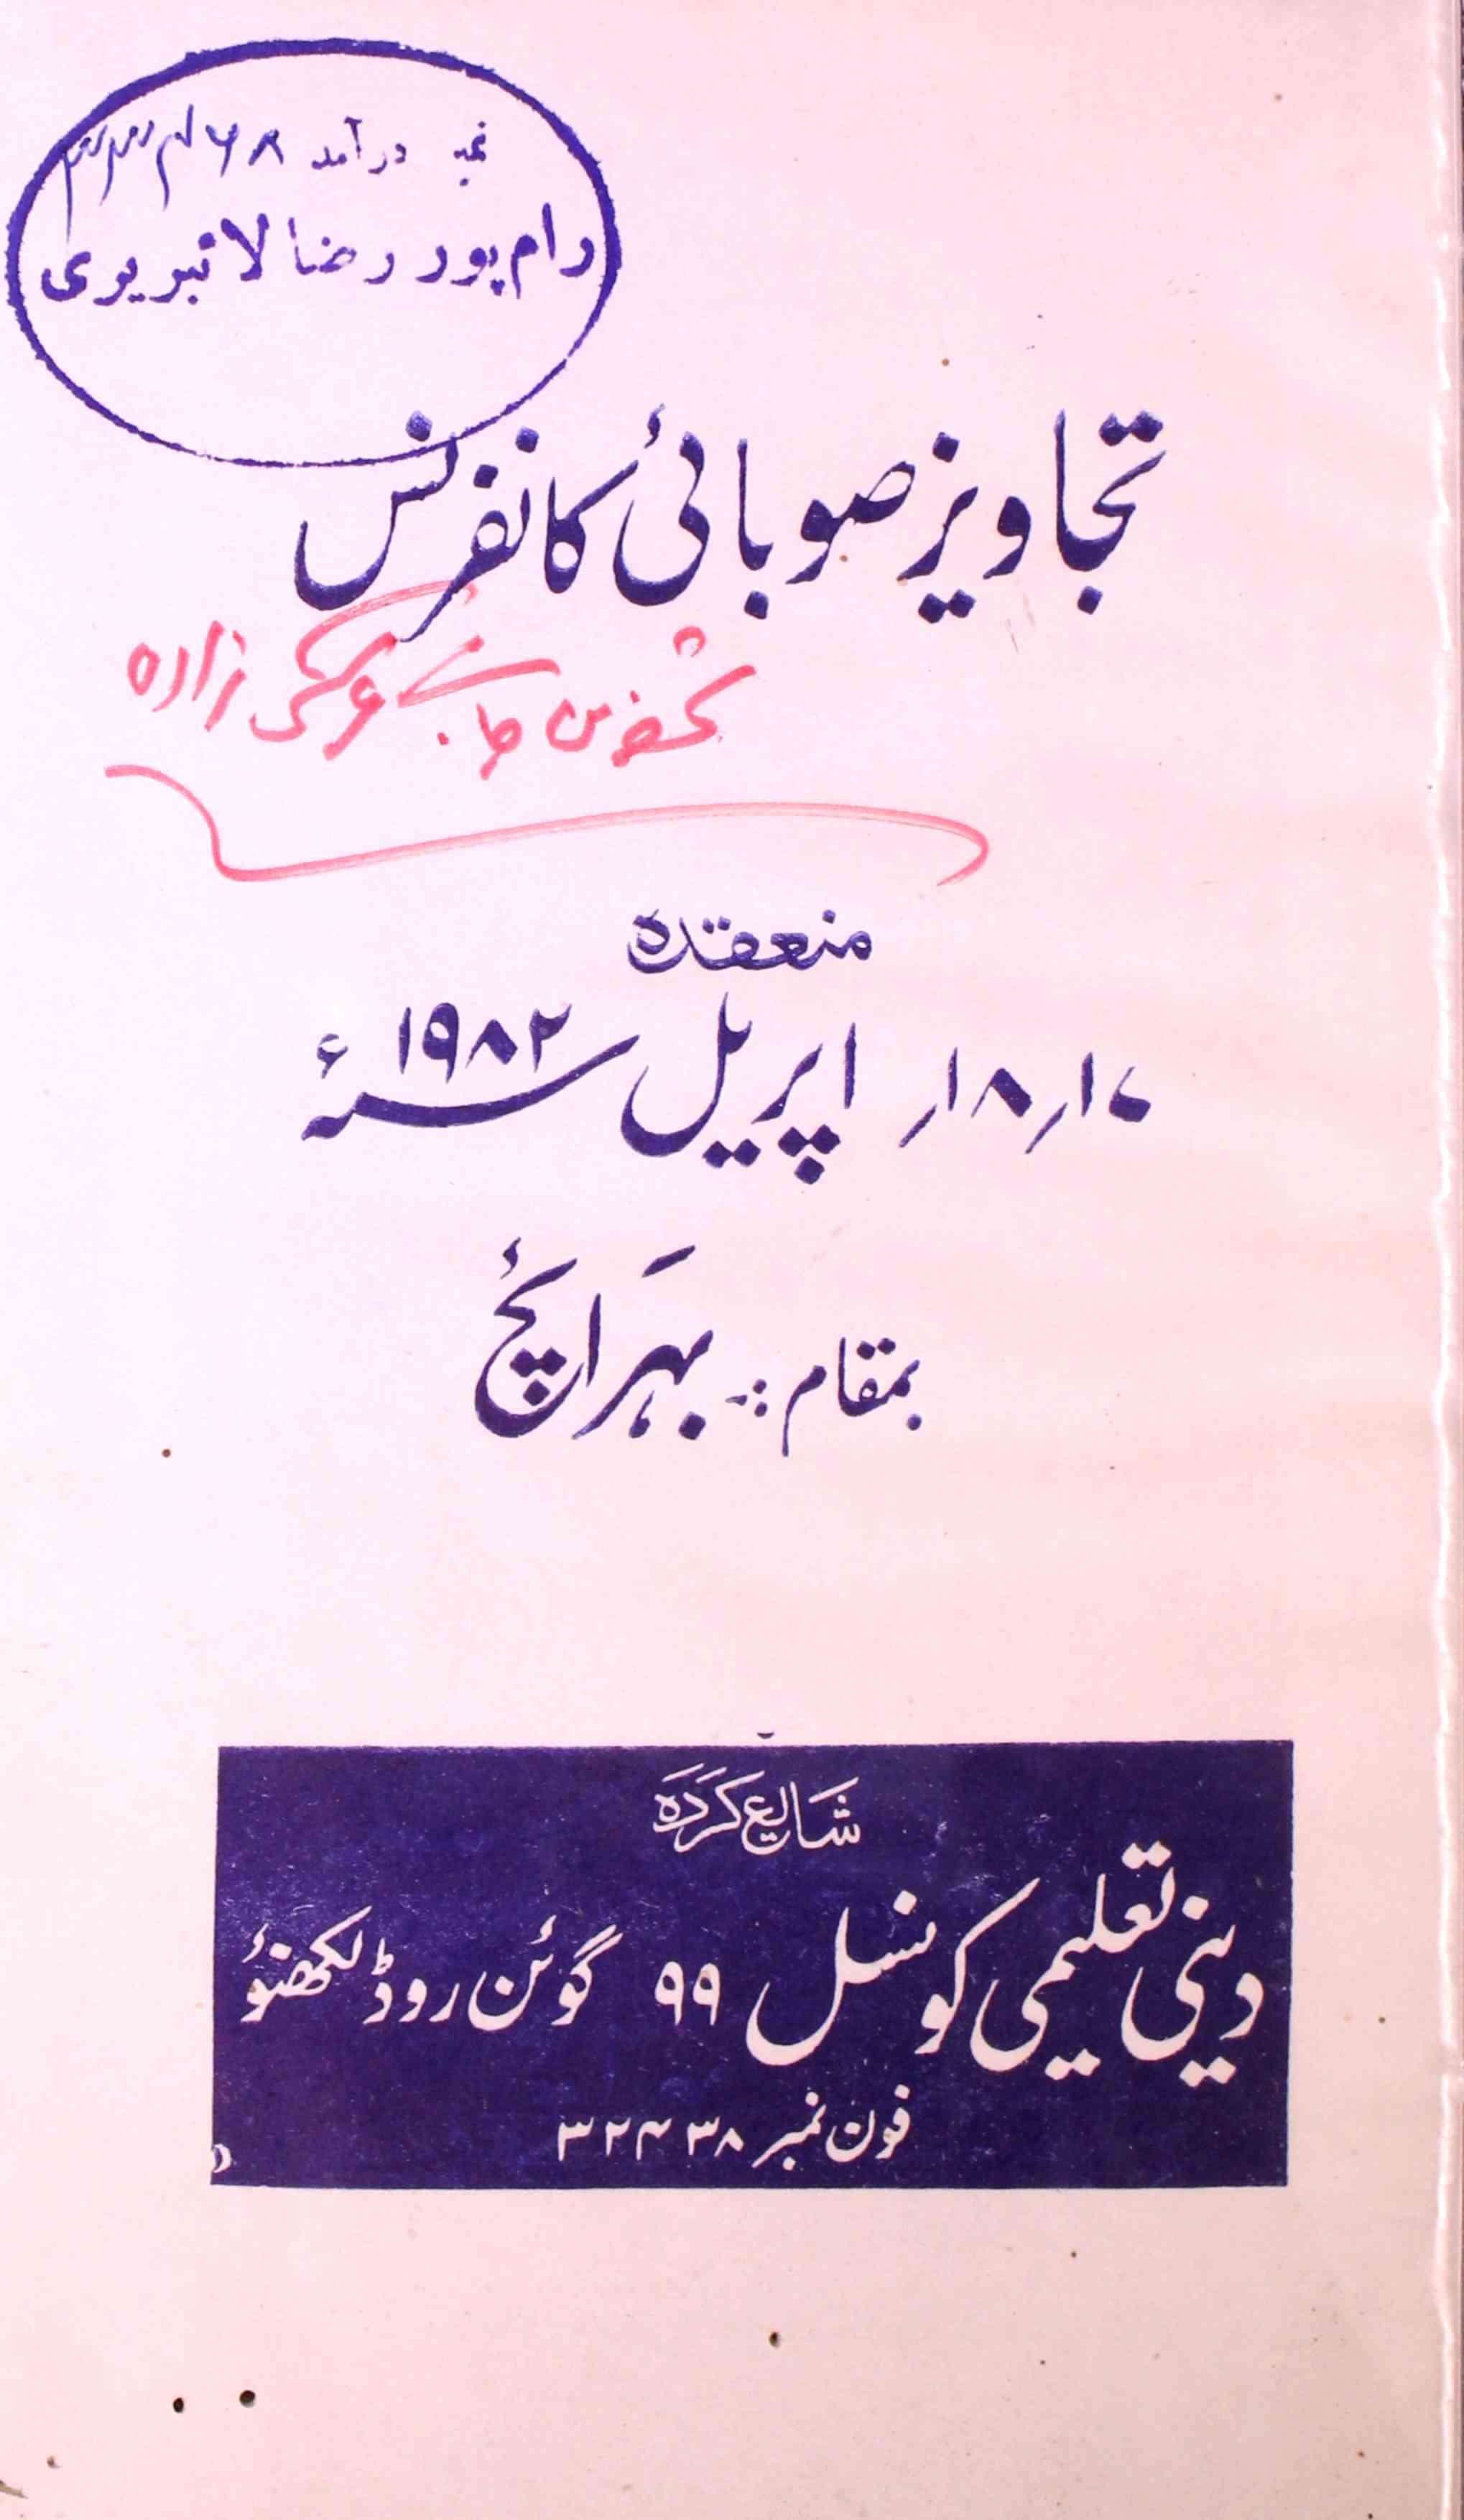 Tajaweez-e-Subai Conference